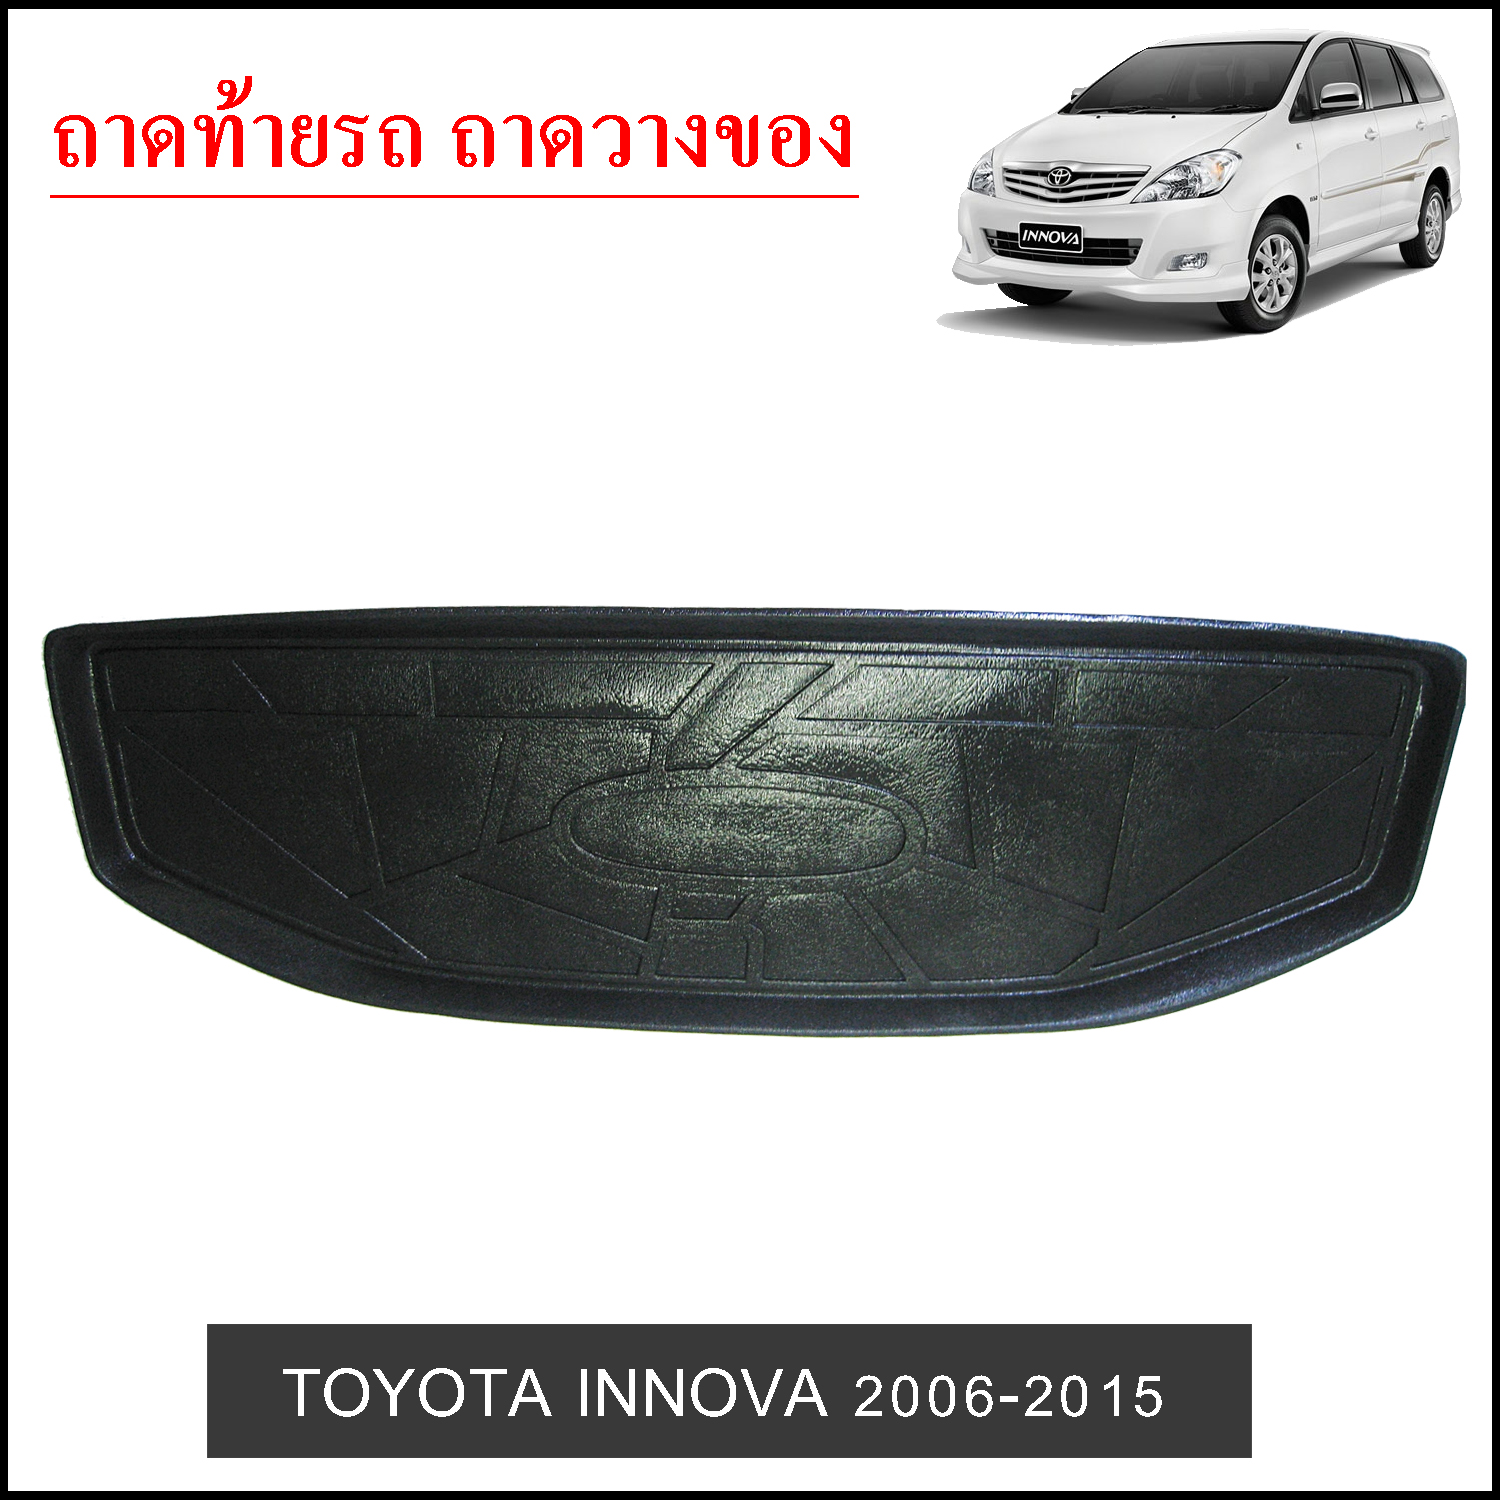 ถาดท้ายวางของ Toyota Innova 2006-2015